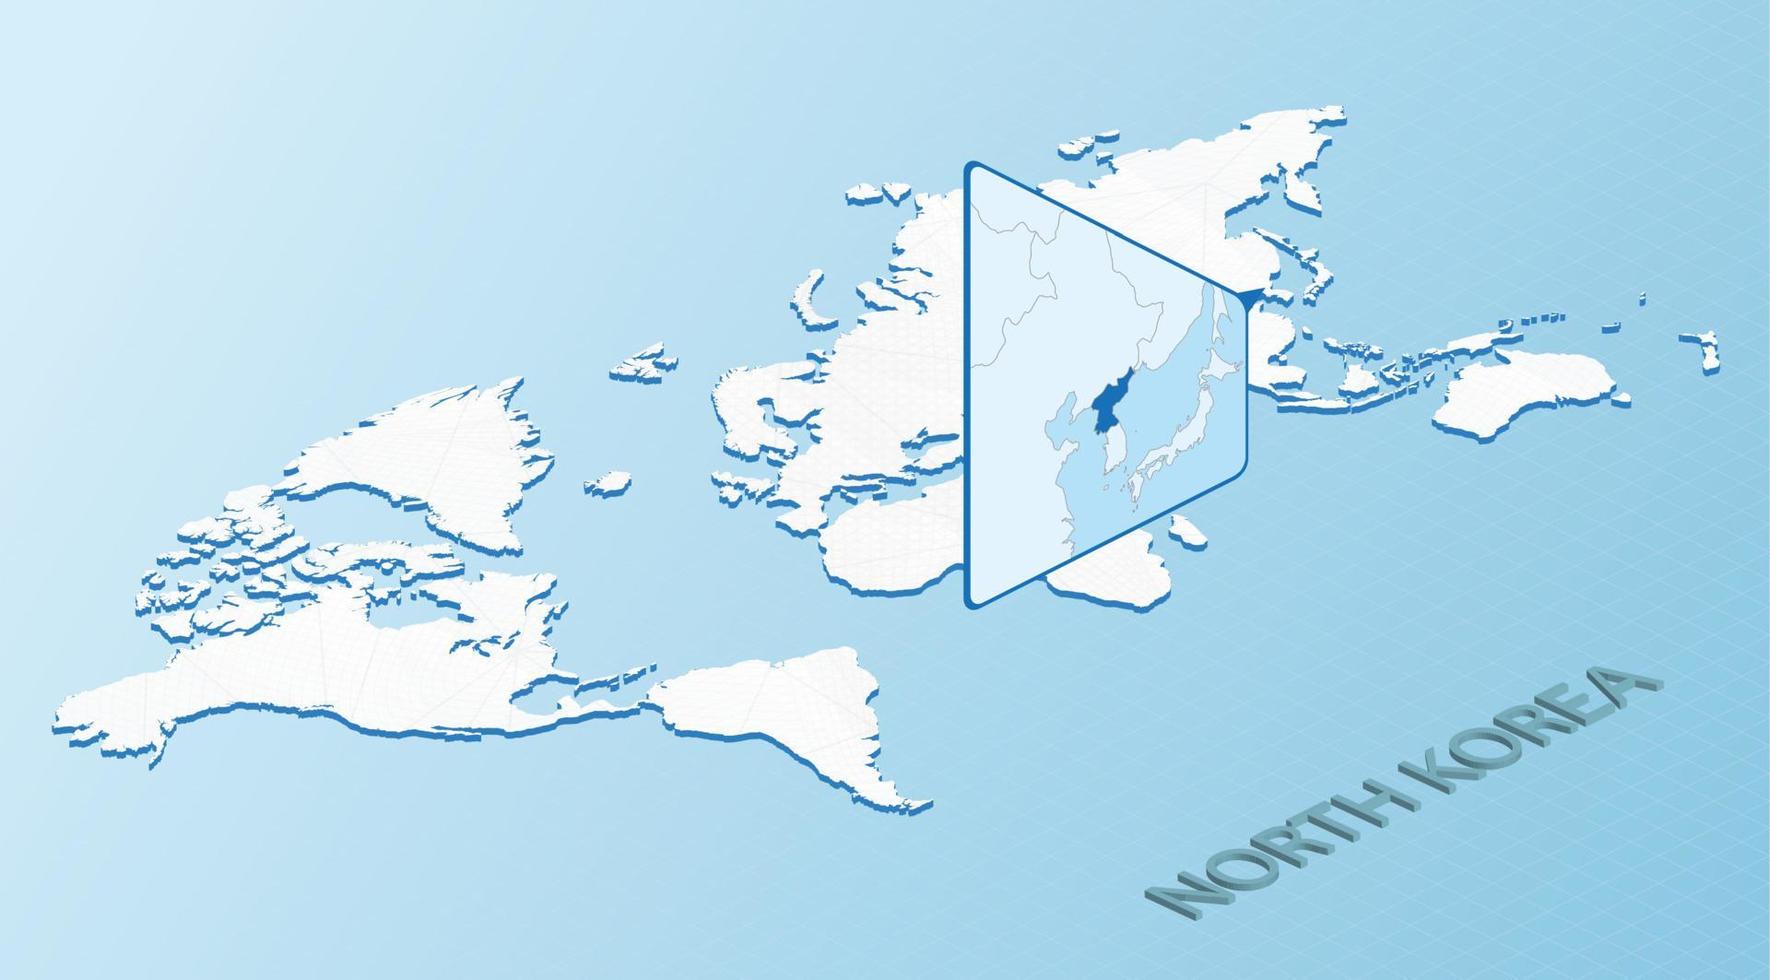 mapa-múndi em estilo isométrico com mapa detalhado da coreia do norte. mapa da coreia do norte azul claro com mapa do mundo abstrato. vetor